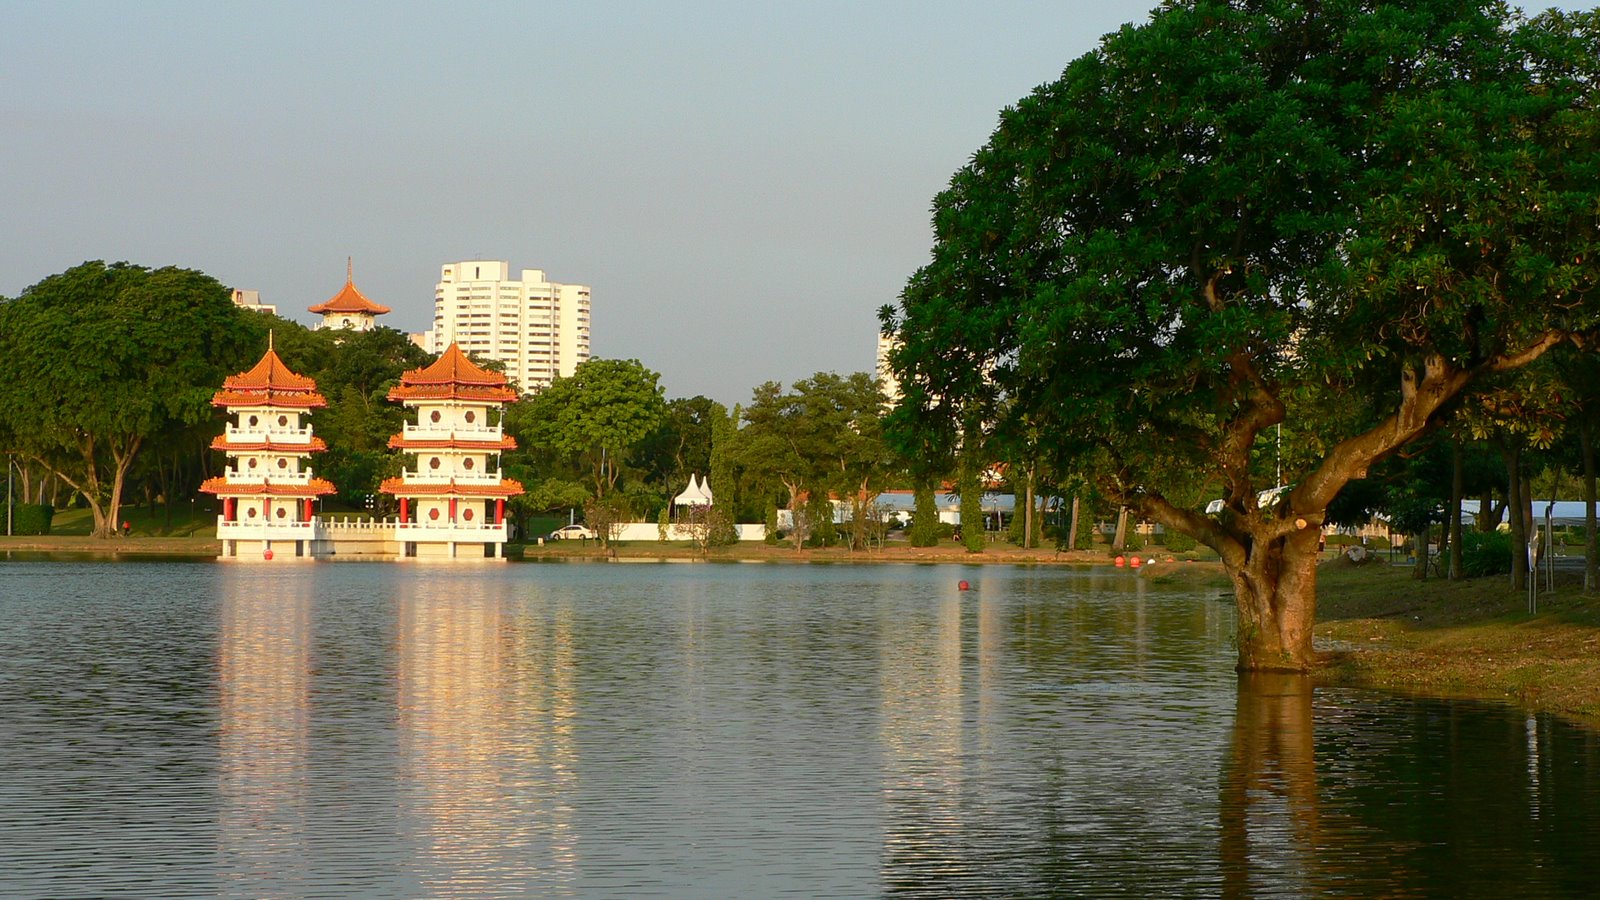 jurong lake park